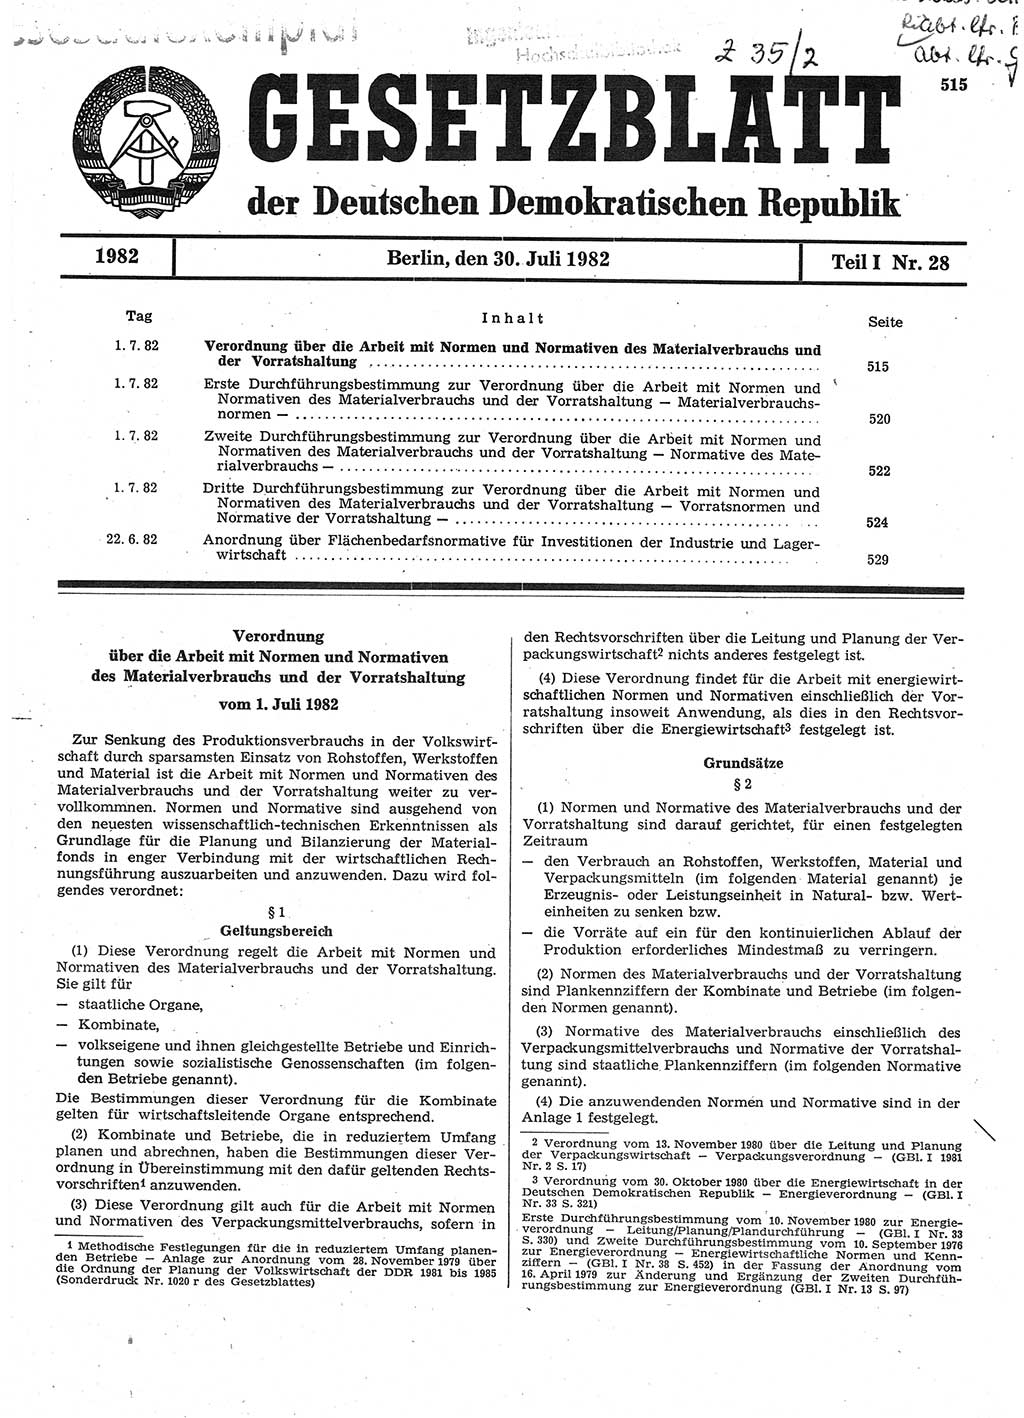 Gesetzblatt (GBl.) der Deutschen Demokratischen Republik (DDR) Teil Ⅰ 1982, Seite 515 (GBl. DDR Ⅰ 1982, S. 515)